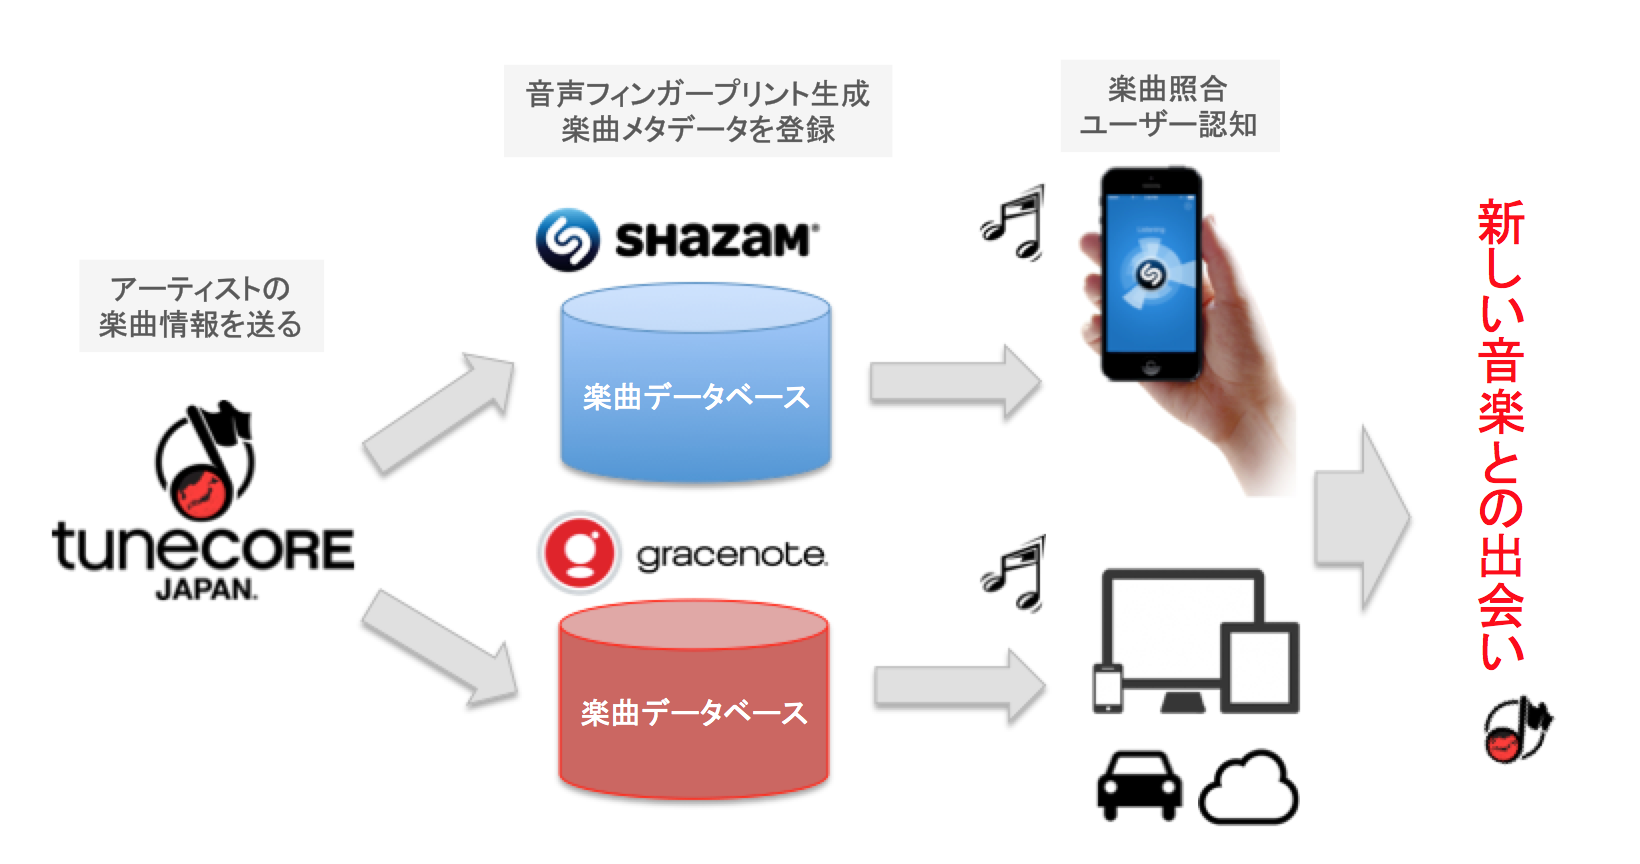 Tunecore Japan 世界最大級の音楽データべース Gracenote と ４ 7億人が利用する音楽アプリ Shazam に楽曲データの提供を開始 チューンコアジャパン株式会社のプレスリリース